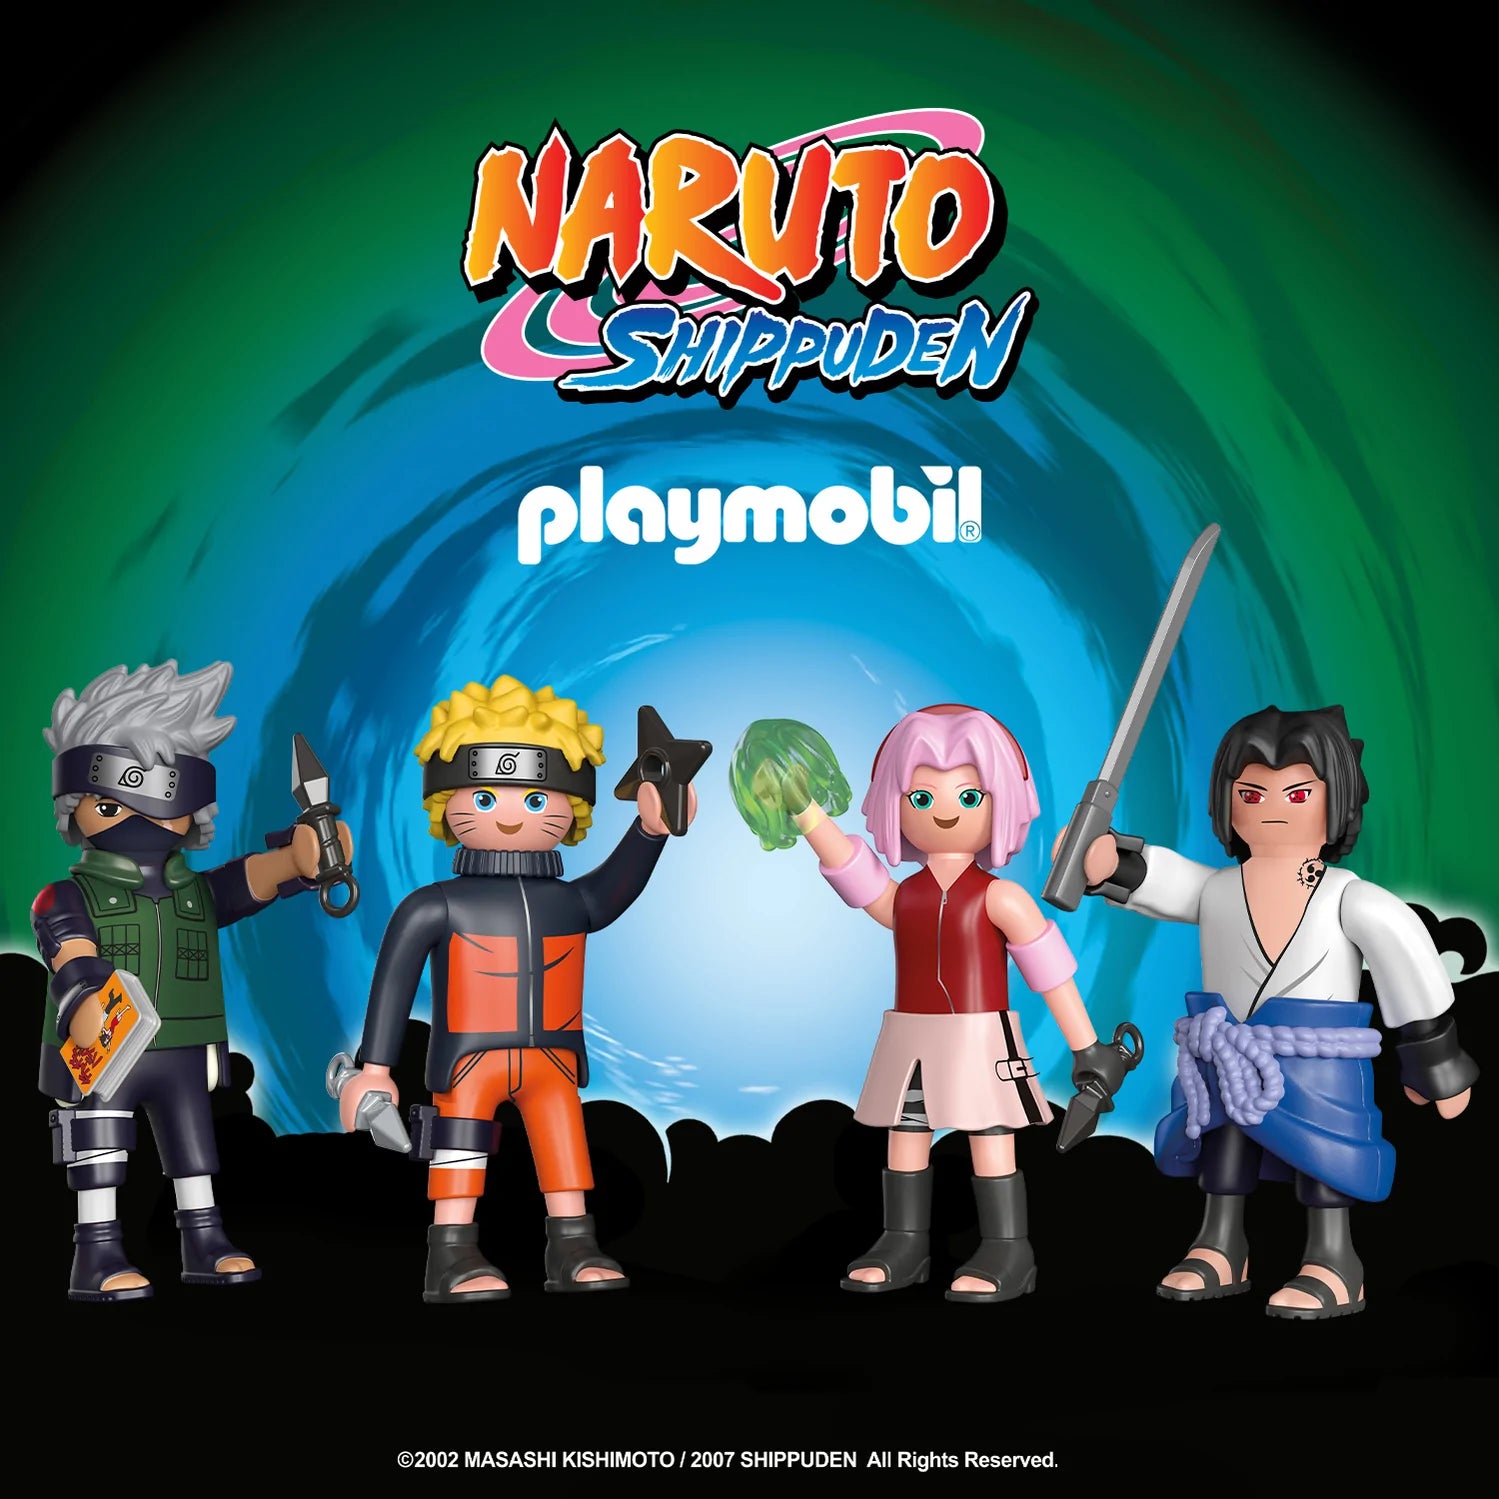 Playmobil und Naruto: Passt das zusammen?